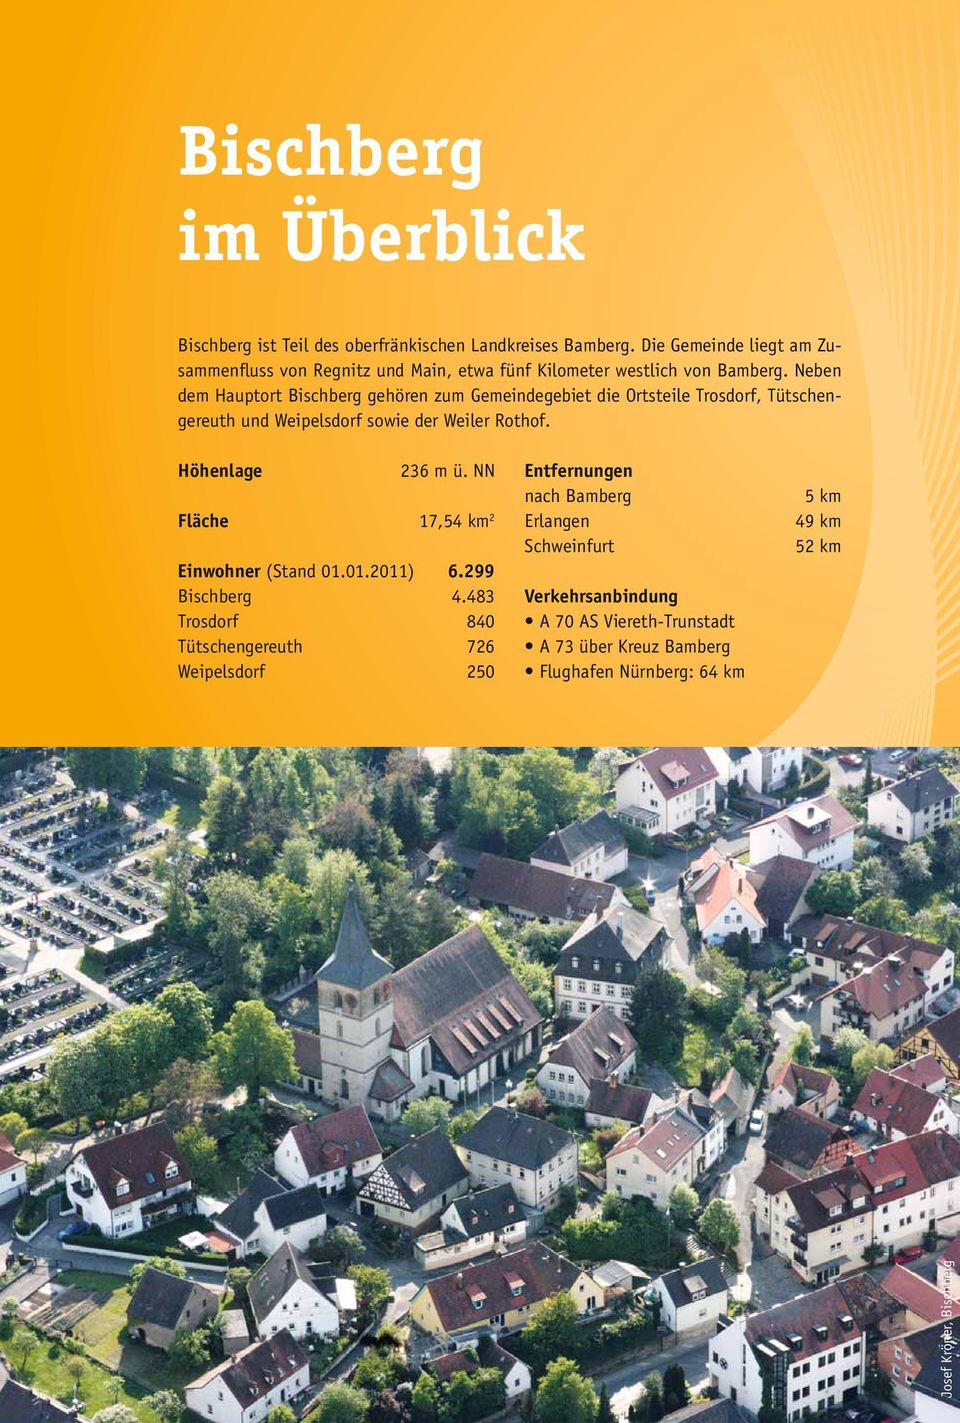 gemeinde bischberg stadtnah wohnen leben im grunen burgerinformationen pdf kostenfreier download